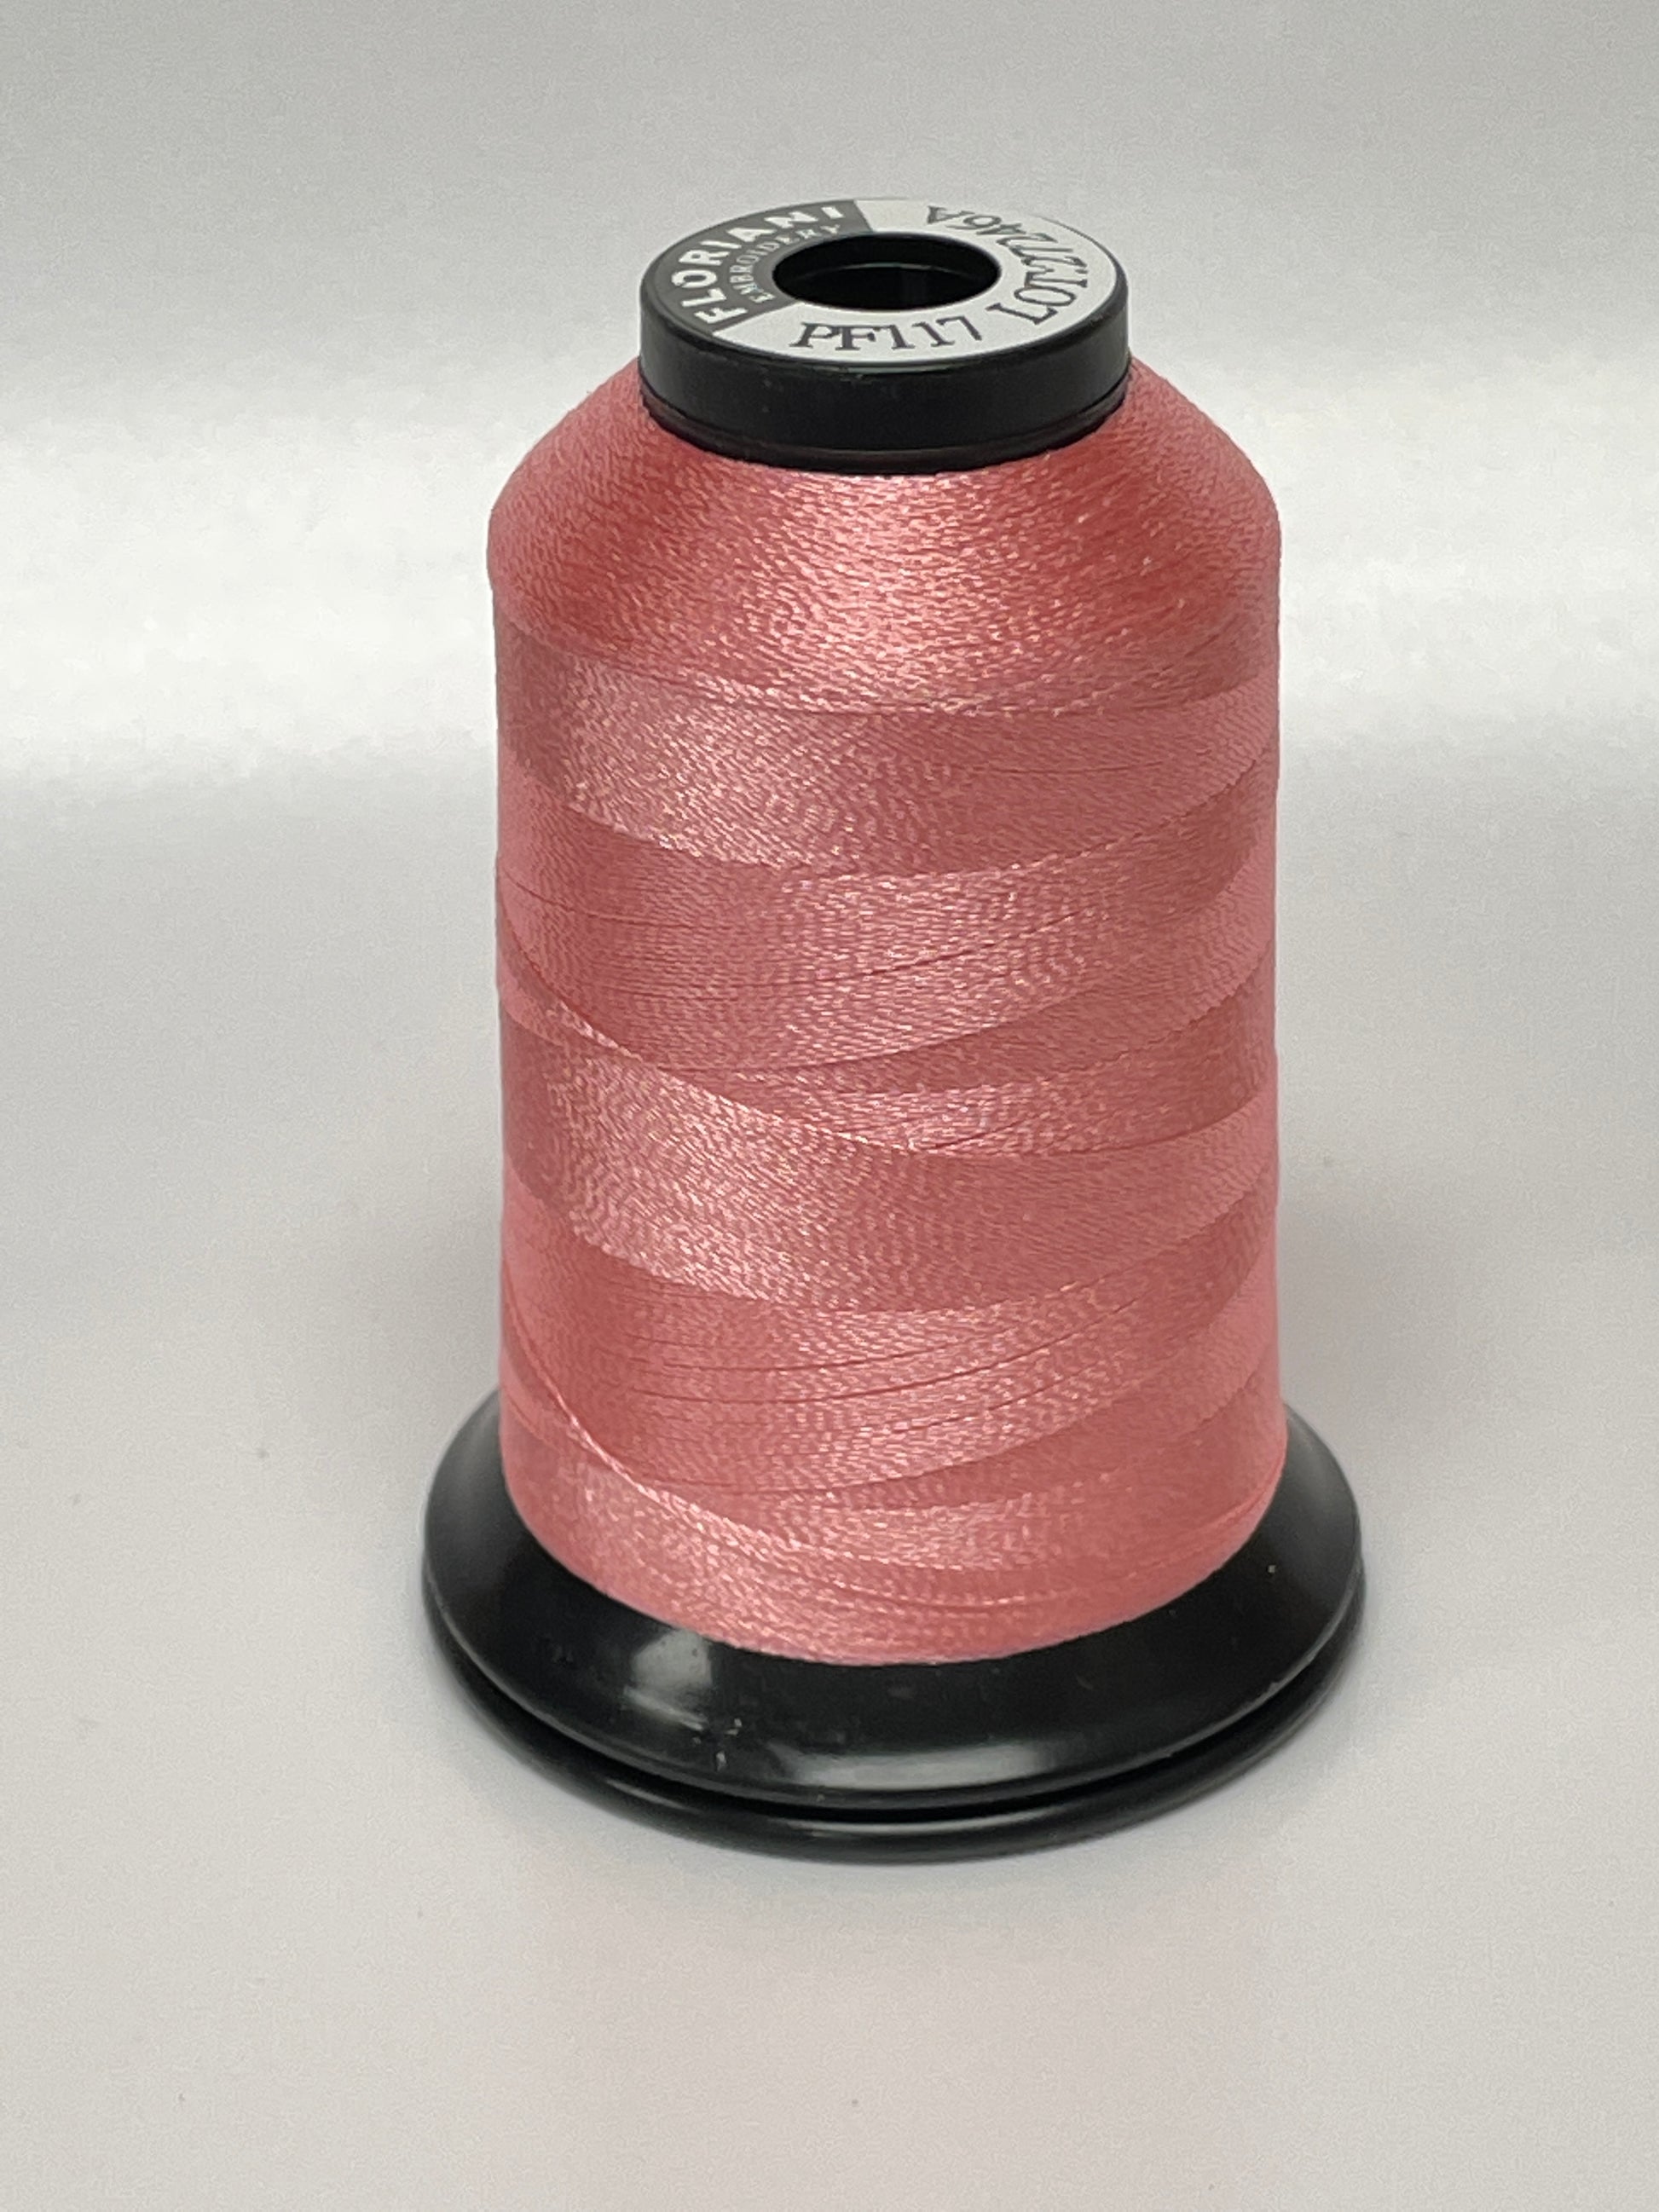 Thread Snips, Foxglove Pink – Benzie Design